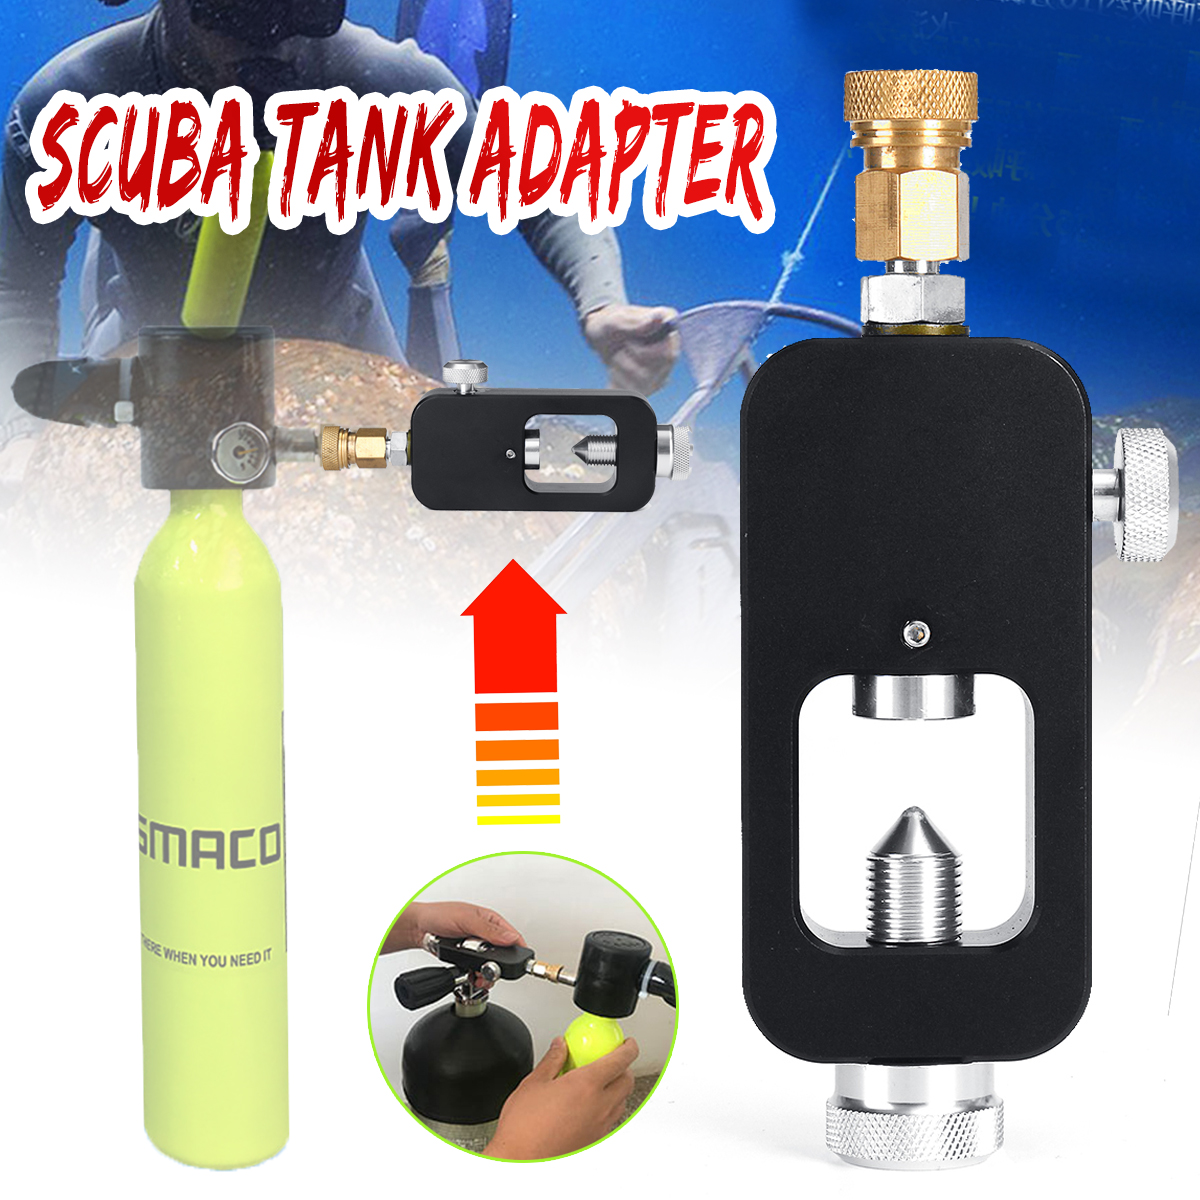 Durable-Diving-Equipment-Oxygen-Cylinder-Scuba-Tank-Refill-Adapter-Oxygen-Scuba-Converter-1458416